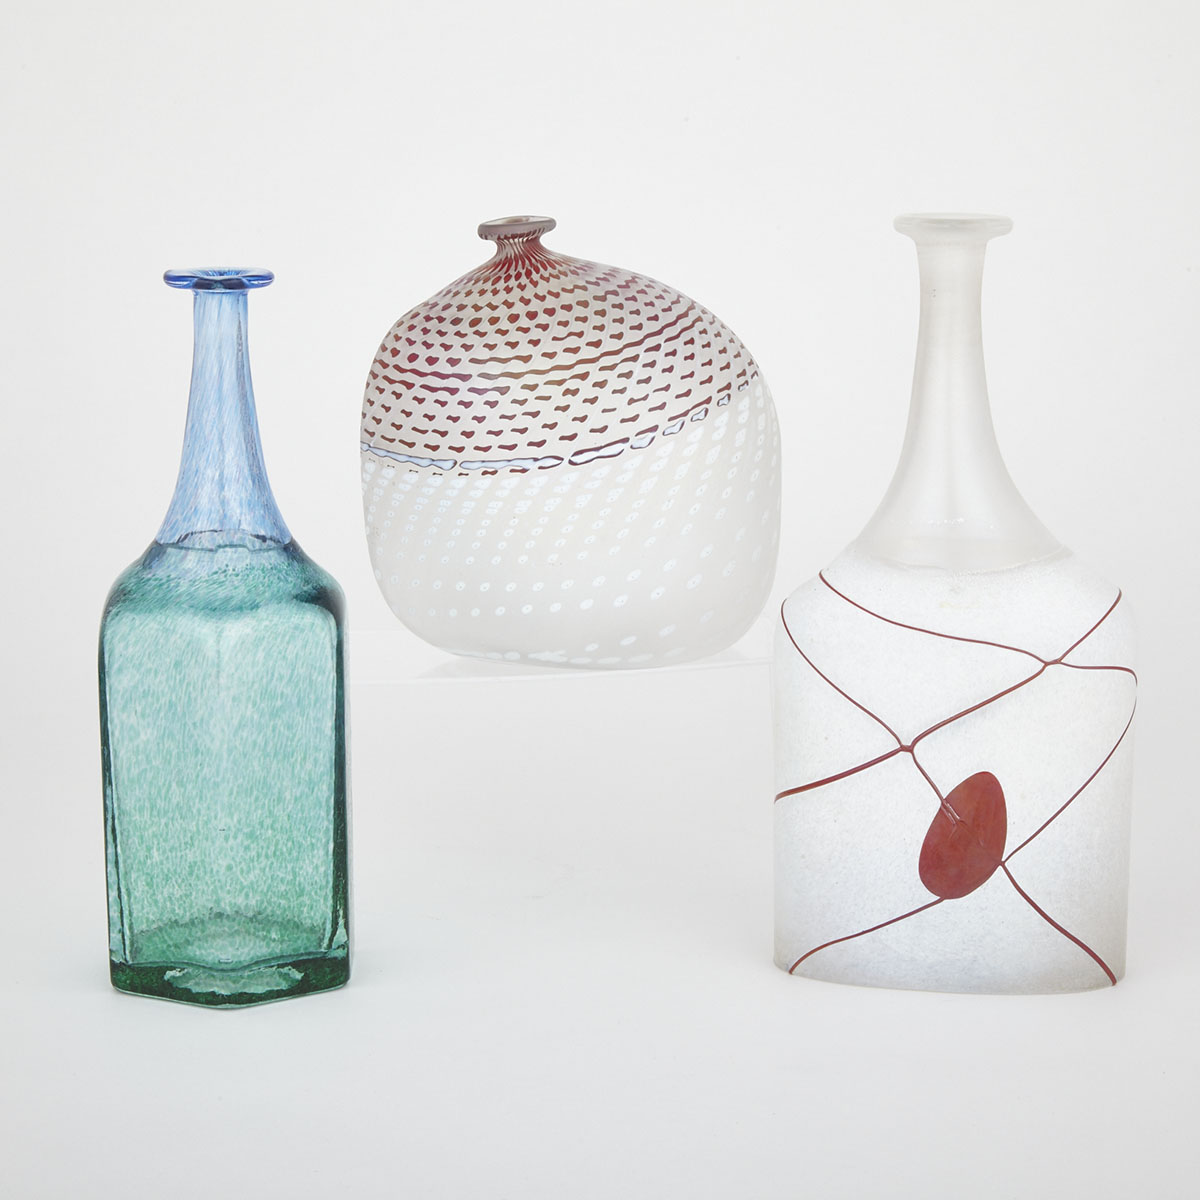 Three Kosta Boda Glass Vases, Bertil Vallien, late 20th century